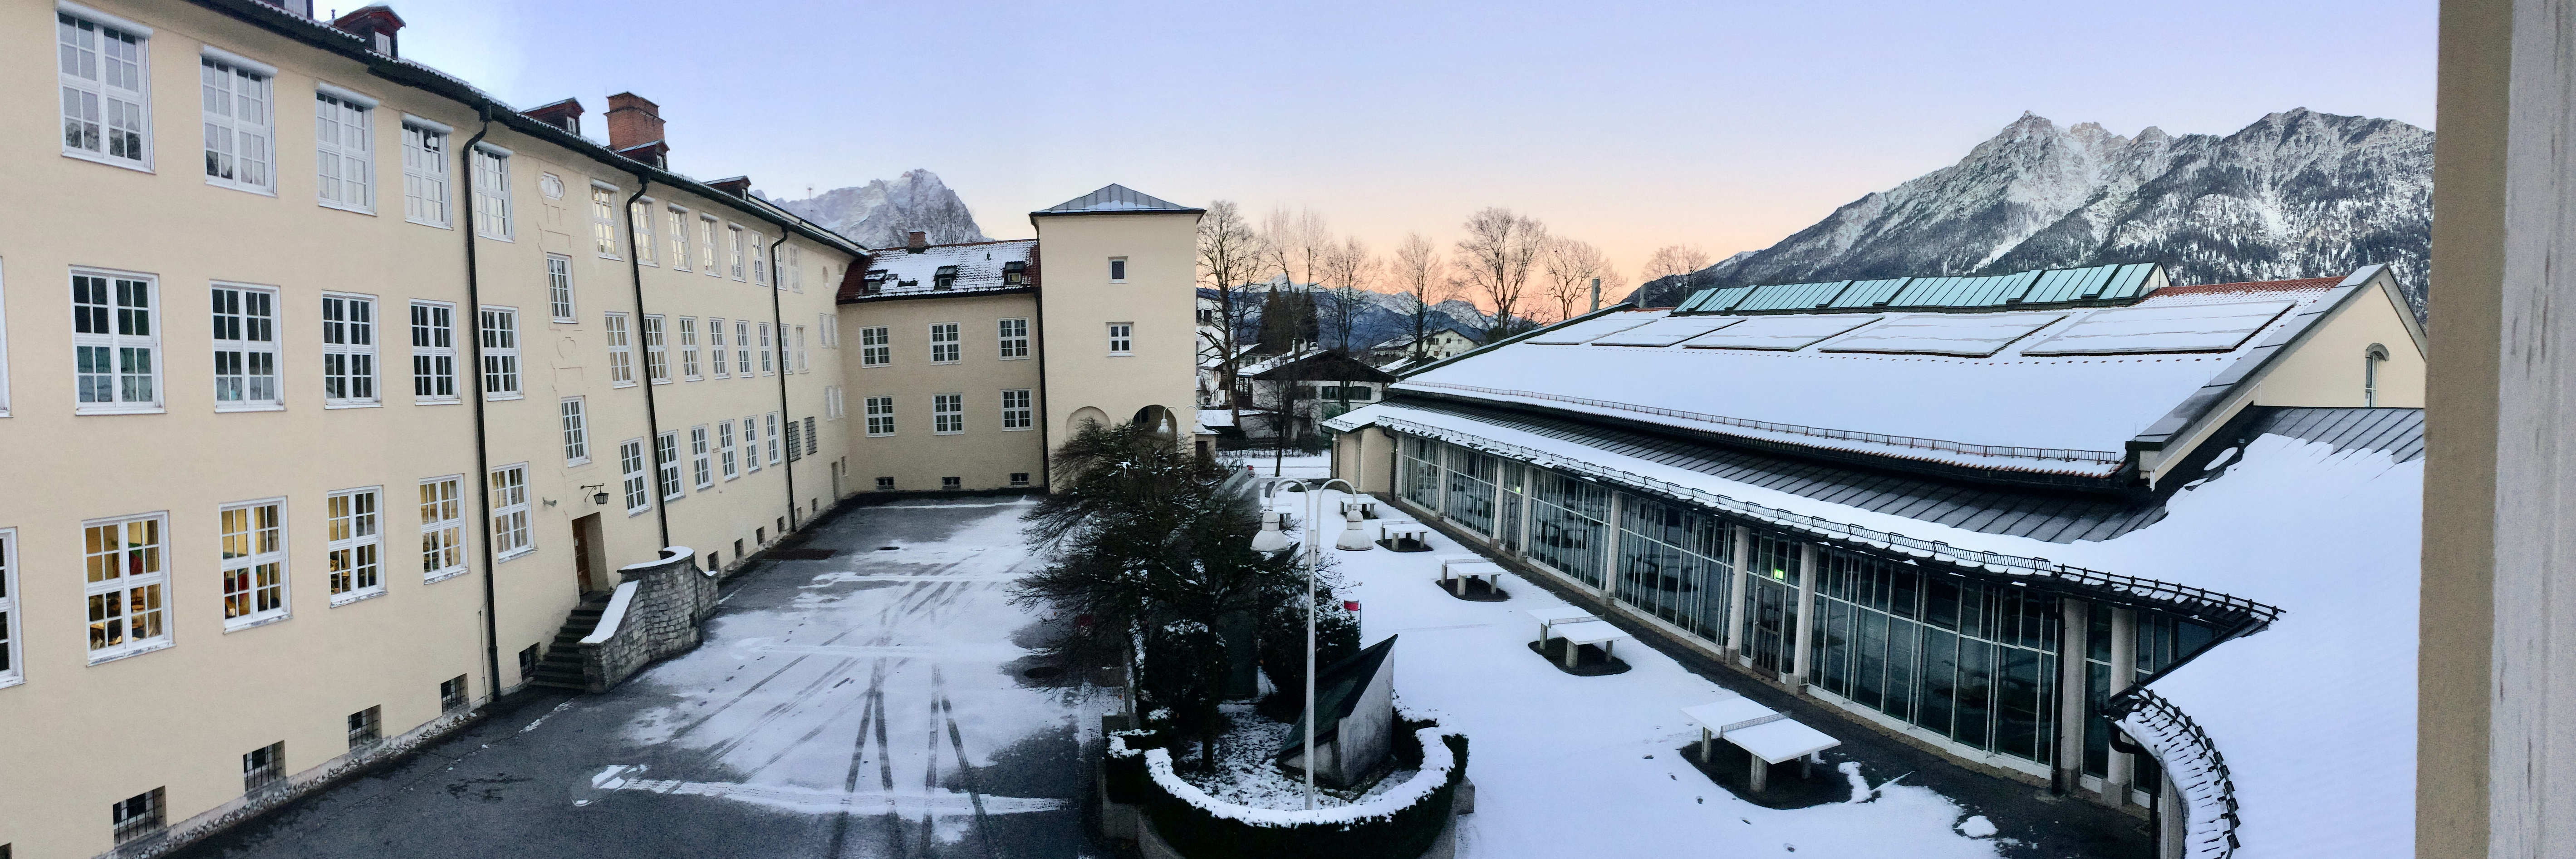 Werdenfels Gymnasium Garmisch Partenkirchen